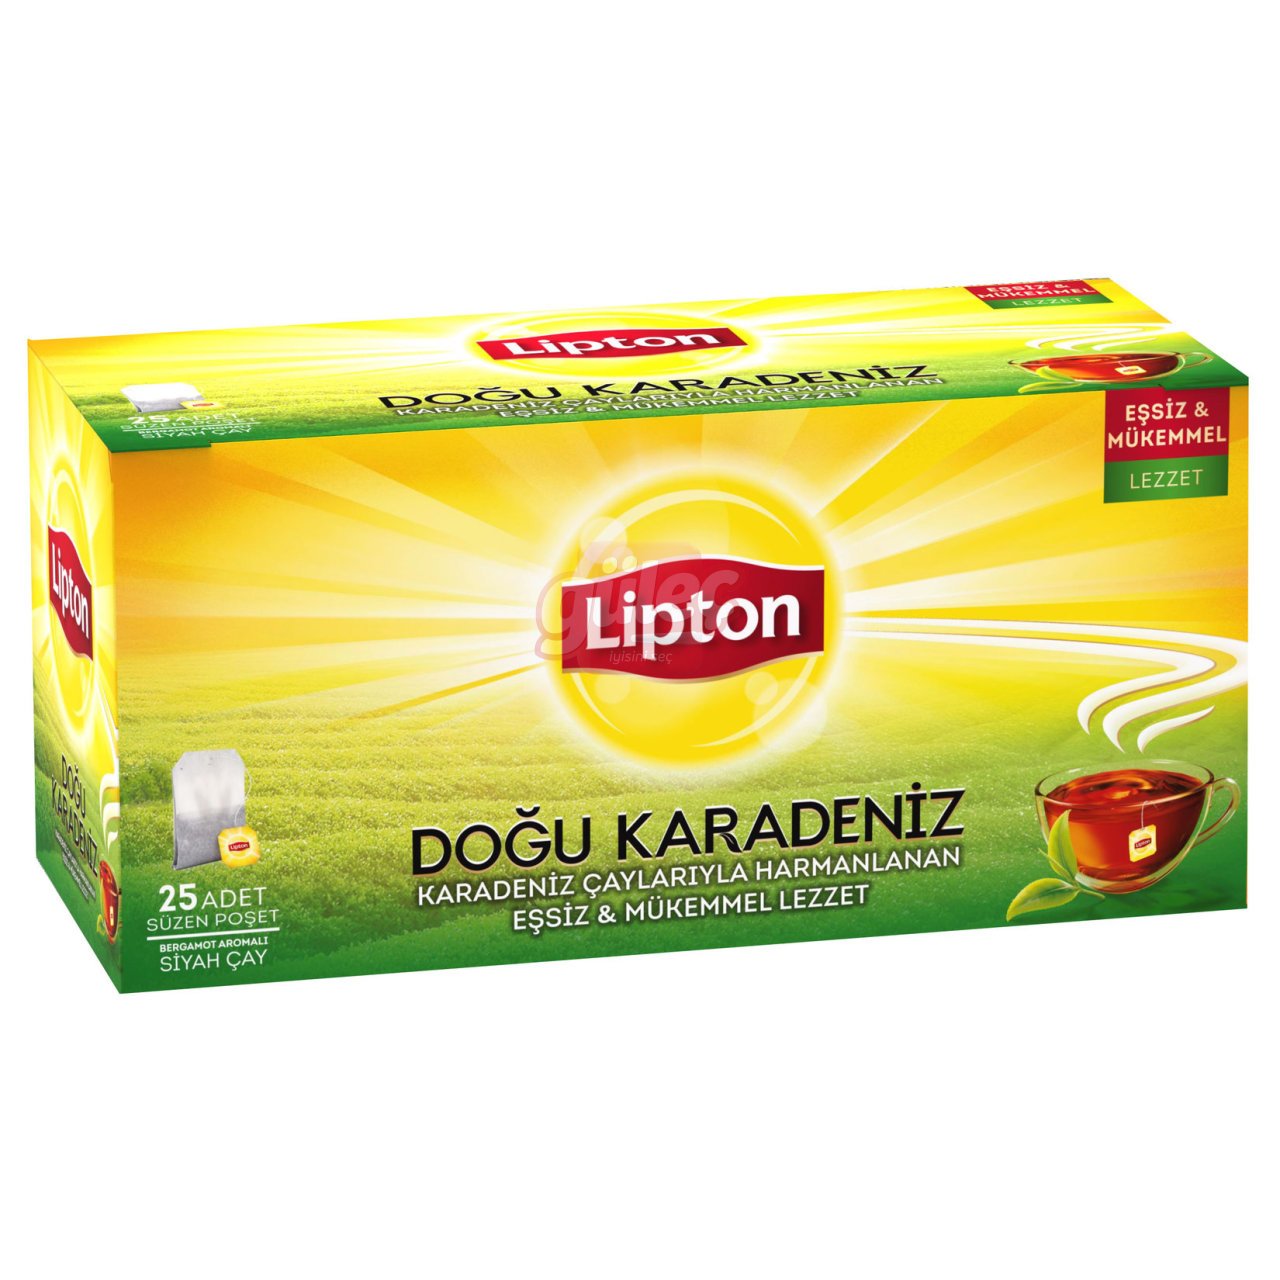 Lipton Doğu Karadeniz Bergamot Aromalı 25'li Bardak Poşet Çay 50 G